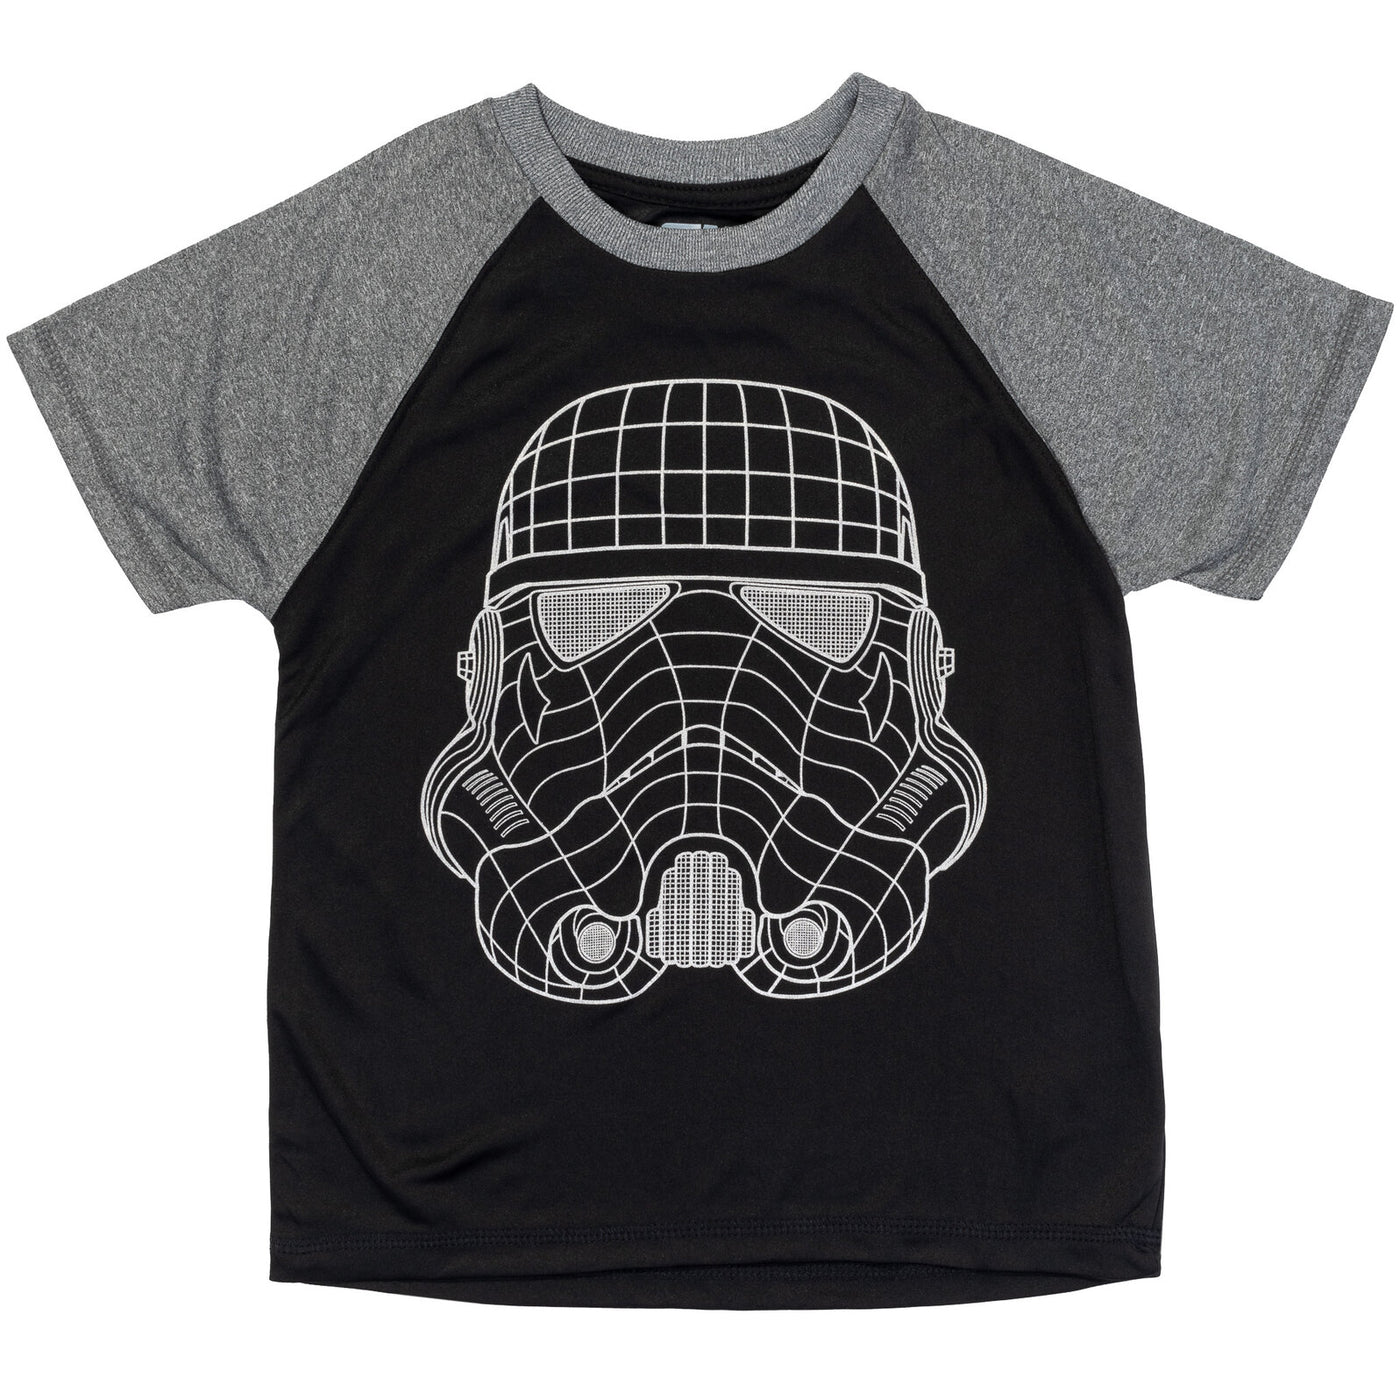 Star Wars Darth Vader 3 Pack T-Shirts